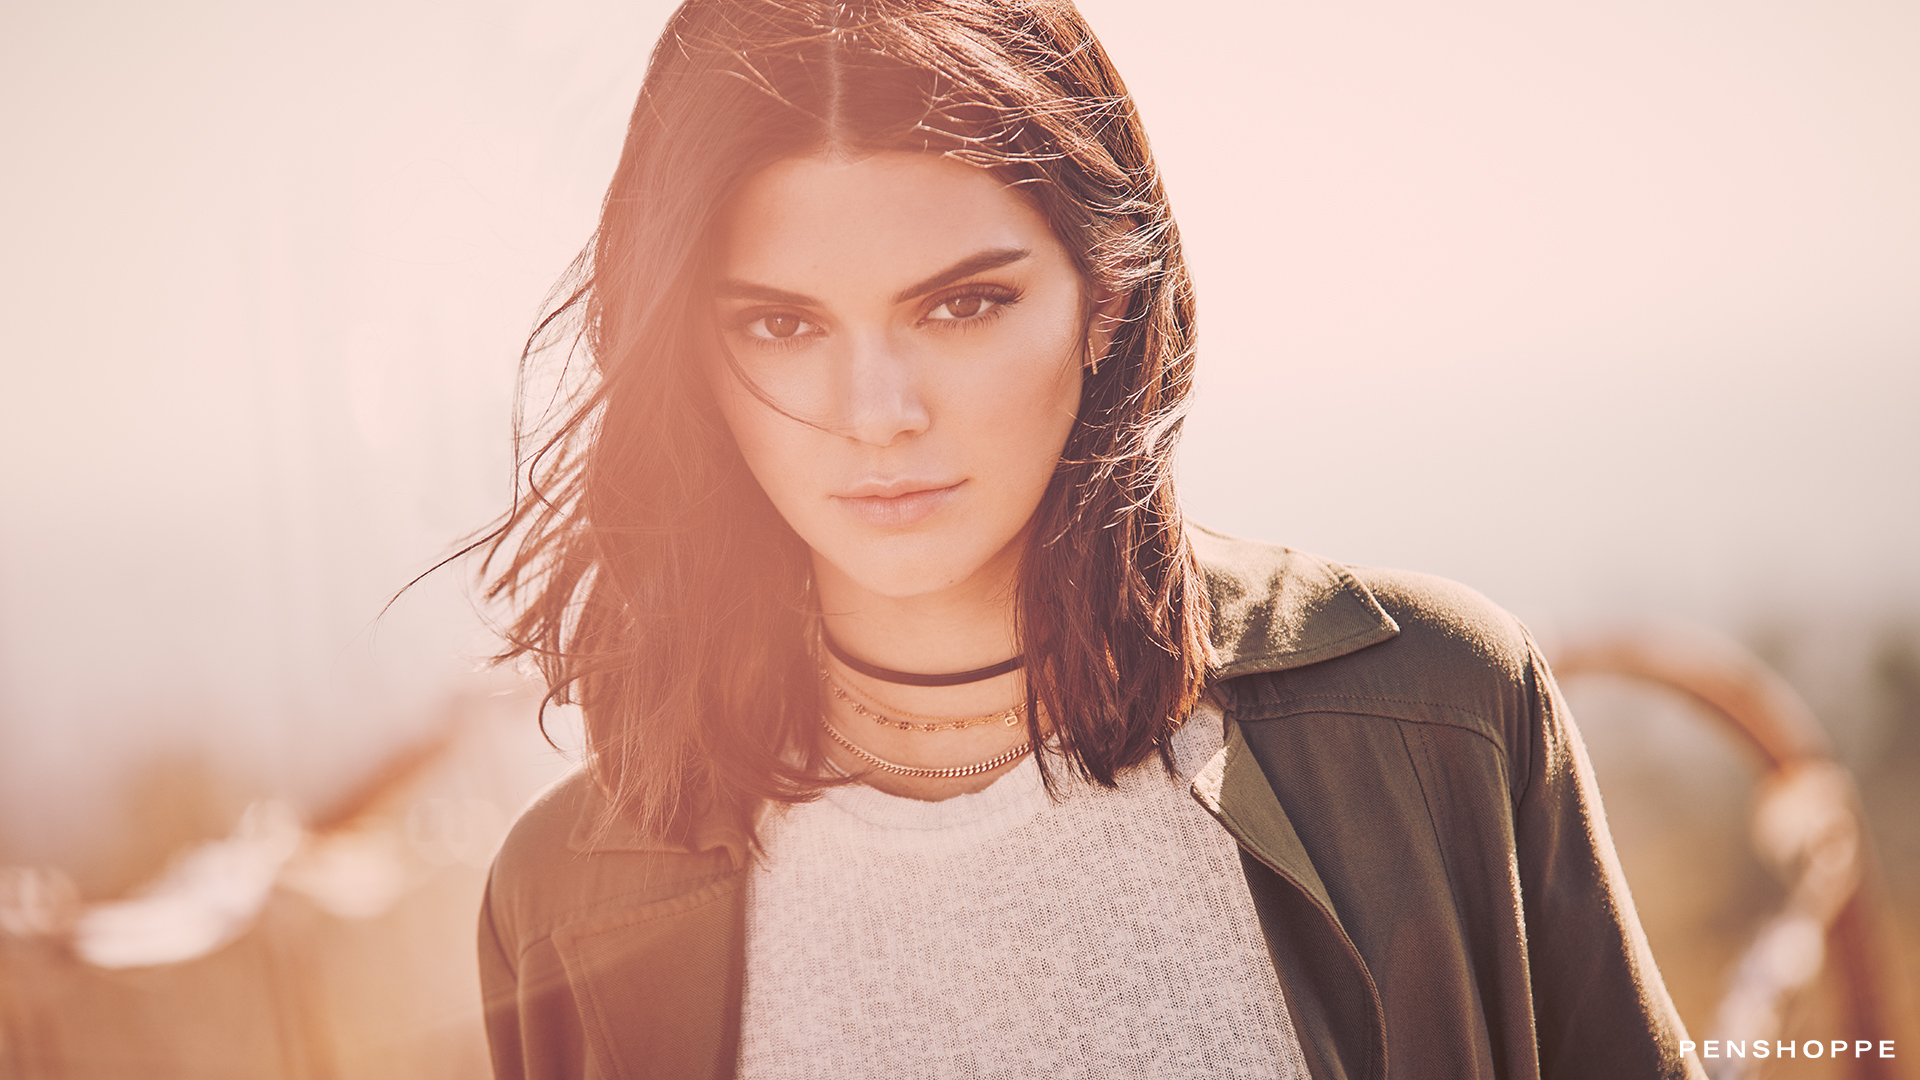 #model, #kendall Jenner, #women, #penshoppe Wallpaper - Kendall Jenner , HD Wallpaper & Backgrounds